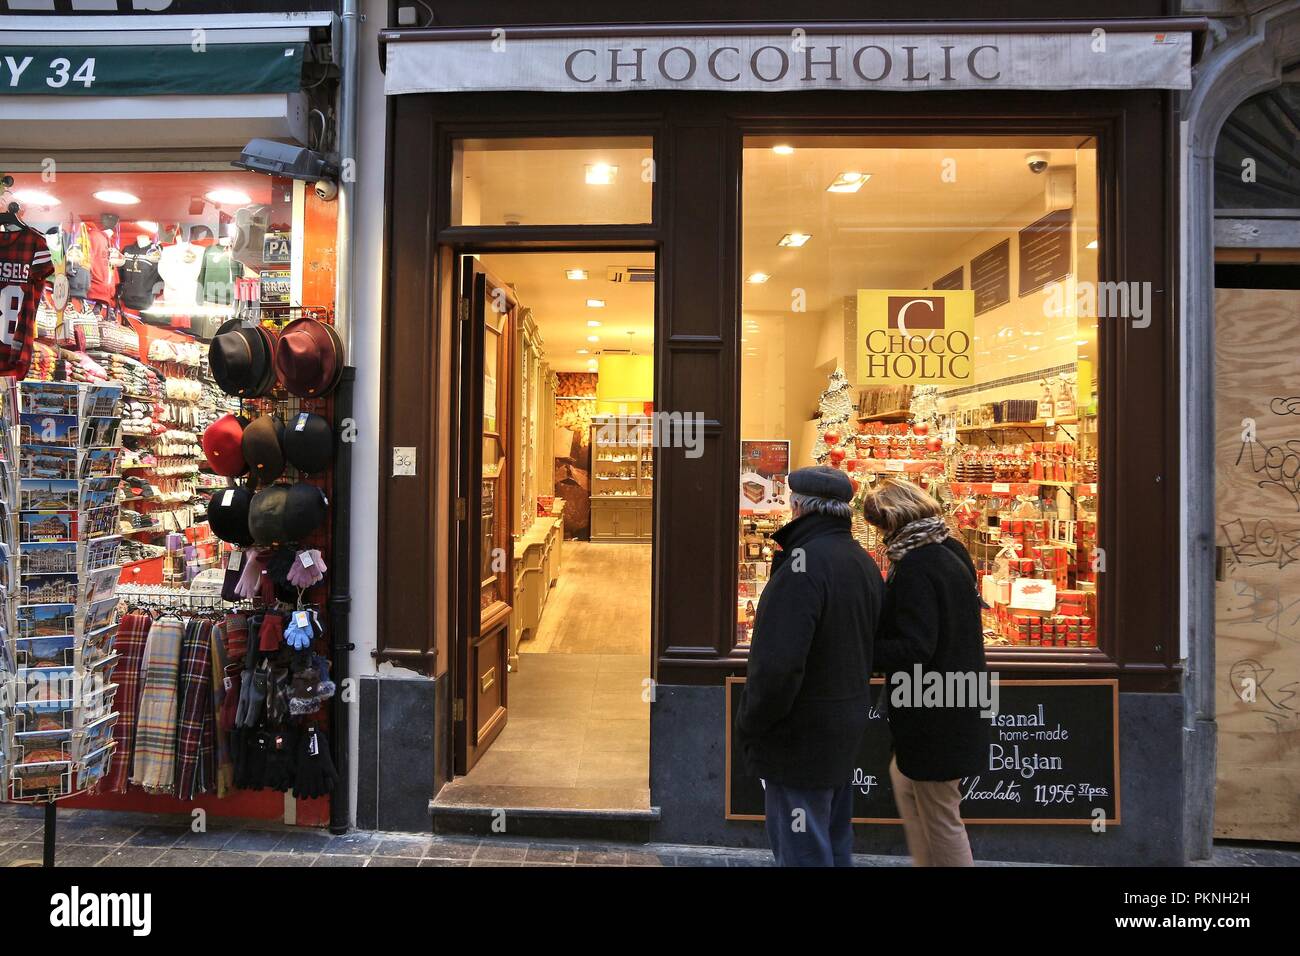 Brüssel, Belgien - 19 November, 2016: Menschen laufen durch die Belgische Schokolade store Chocoholic in Brüssel. Es gibt über 2.000 Chocolatiers in Belgien. Stockfoto